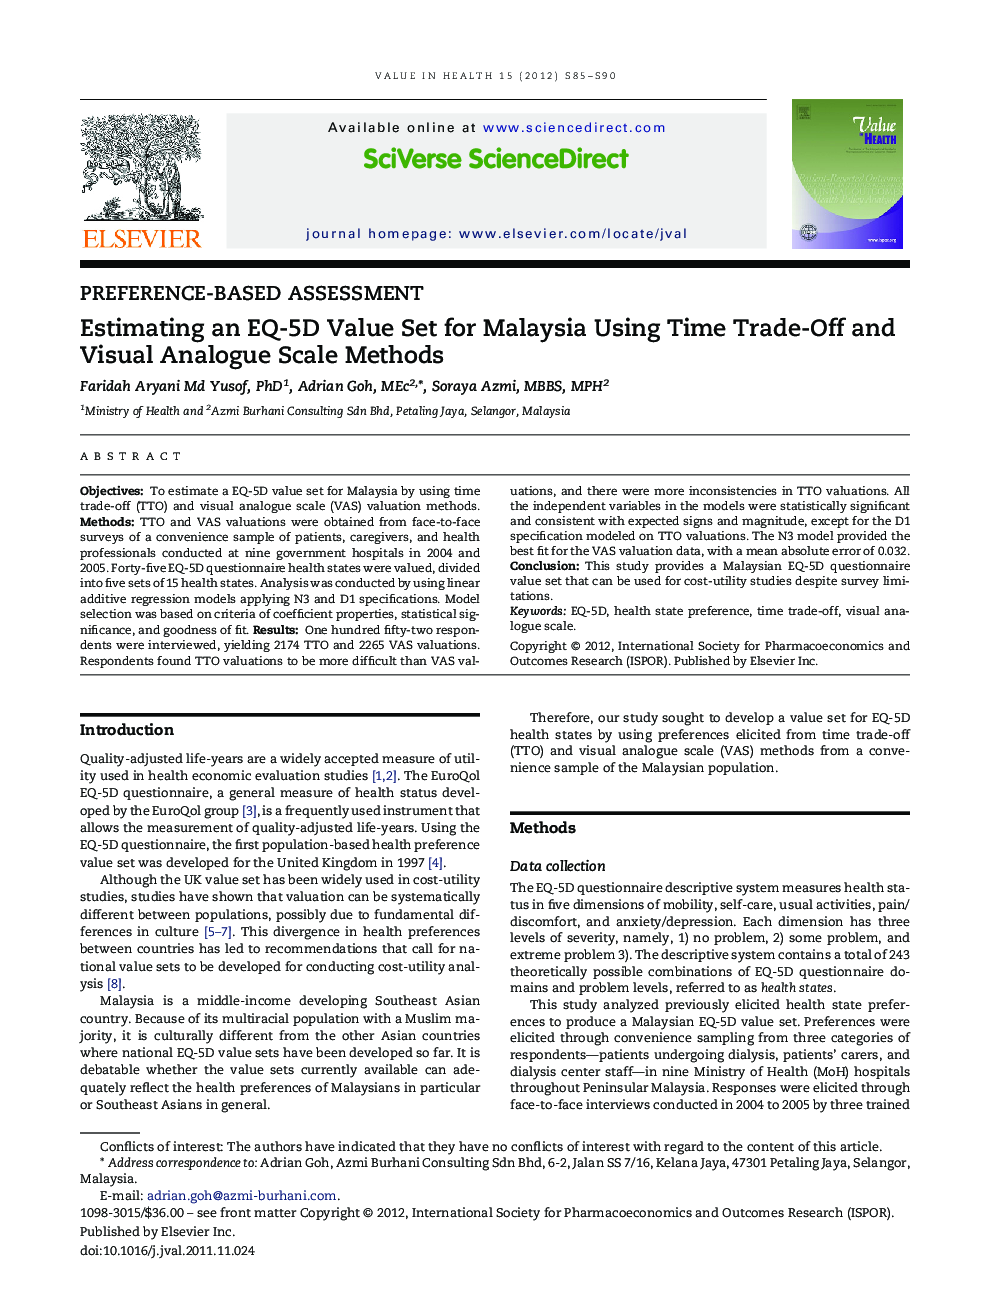 برآورد مجموعه ارزش EQ-5D برای مالزی با استفاده از روش‌های تجارت زمان و مقیاس های آنالوگ ویژوال